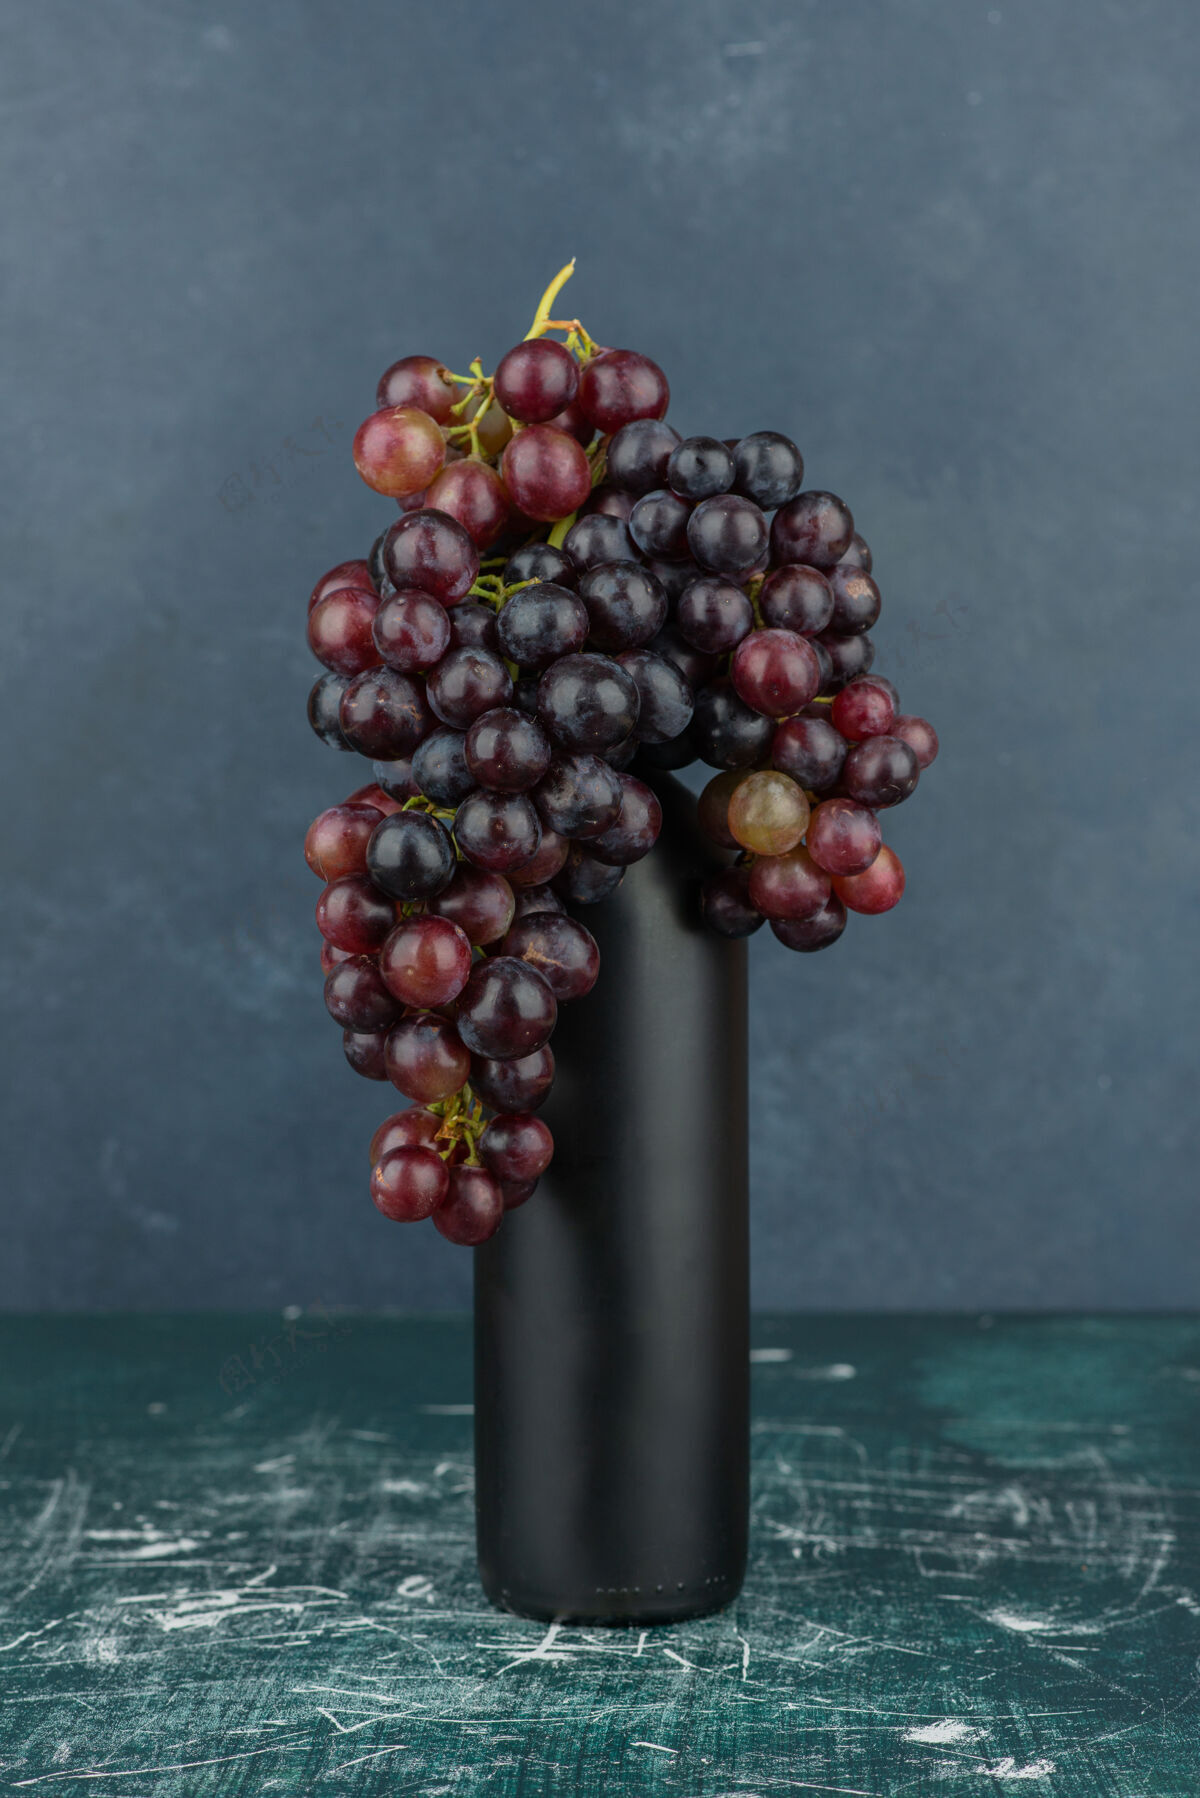 黑色大理石桌上的一个瓶子周围有一簇黑葡萄成熟瓶装葡萄